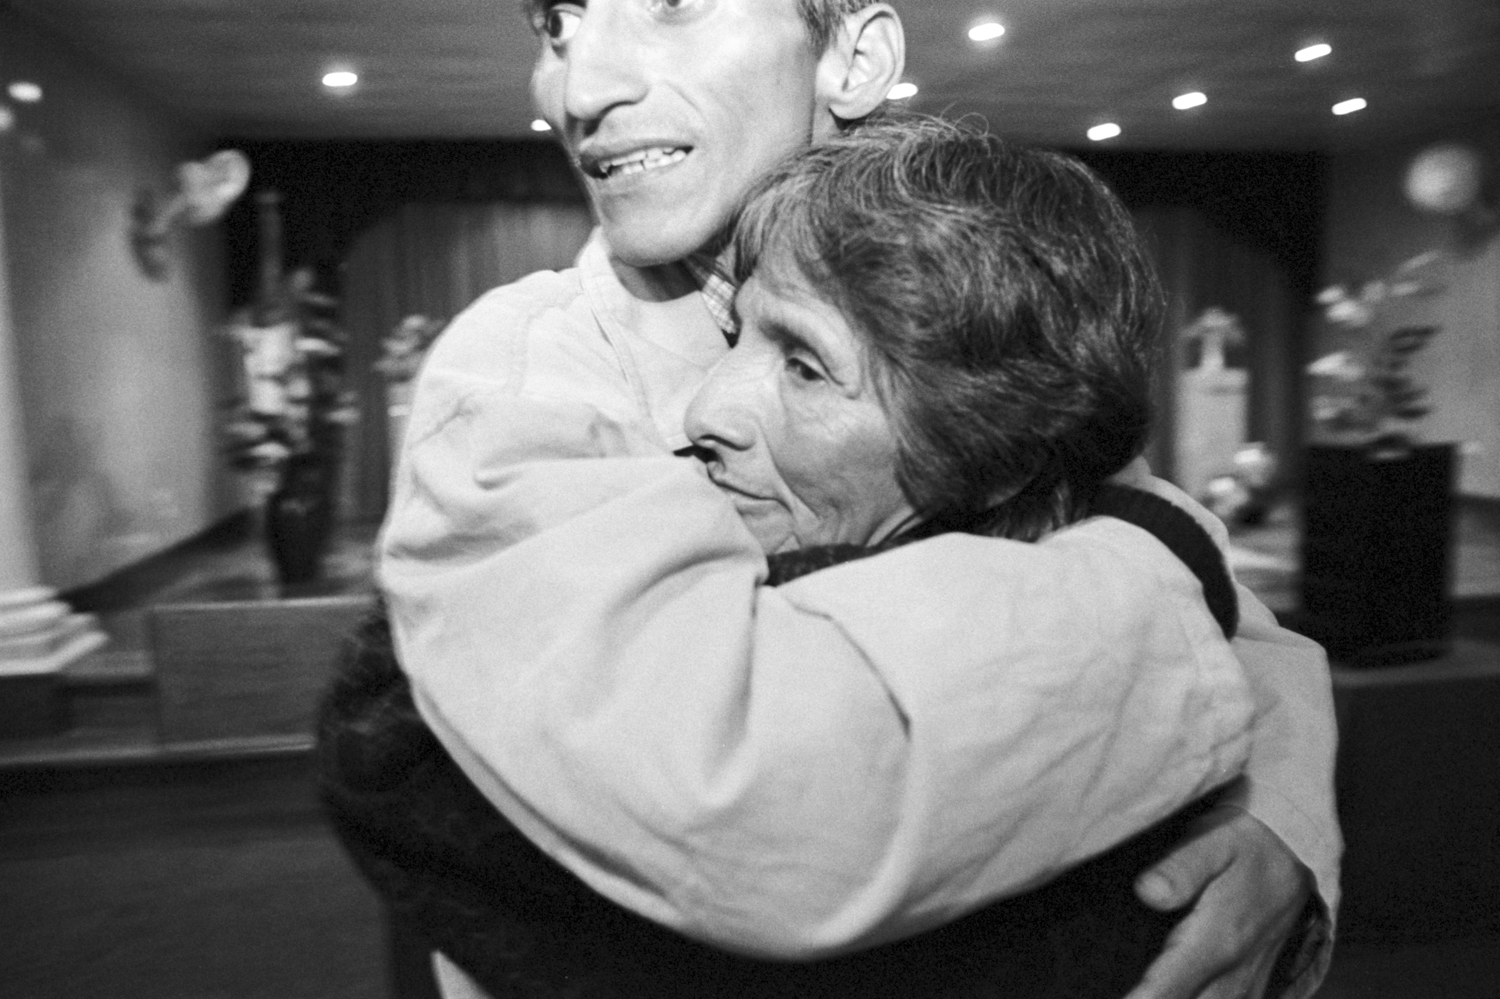 Noviembre, 2002. Lucho Jara, coordinador del Grupo de Ayuda Mutua Vida Nueva, abraza a su madre luego de bautizarse en el Evangelismo, semanas antes de fallecer.